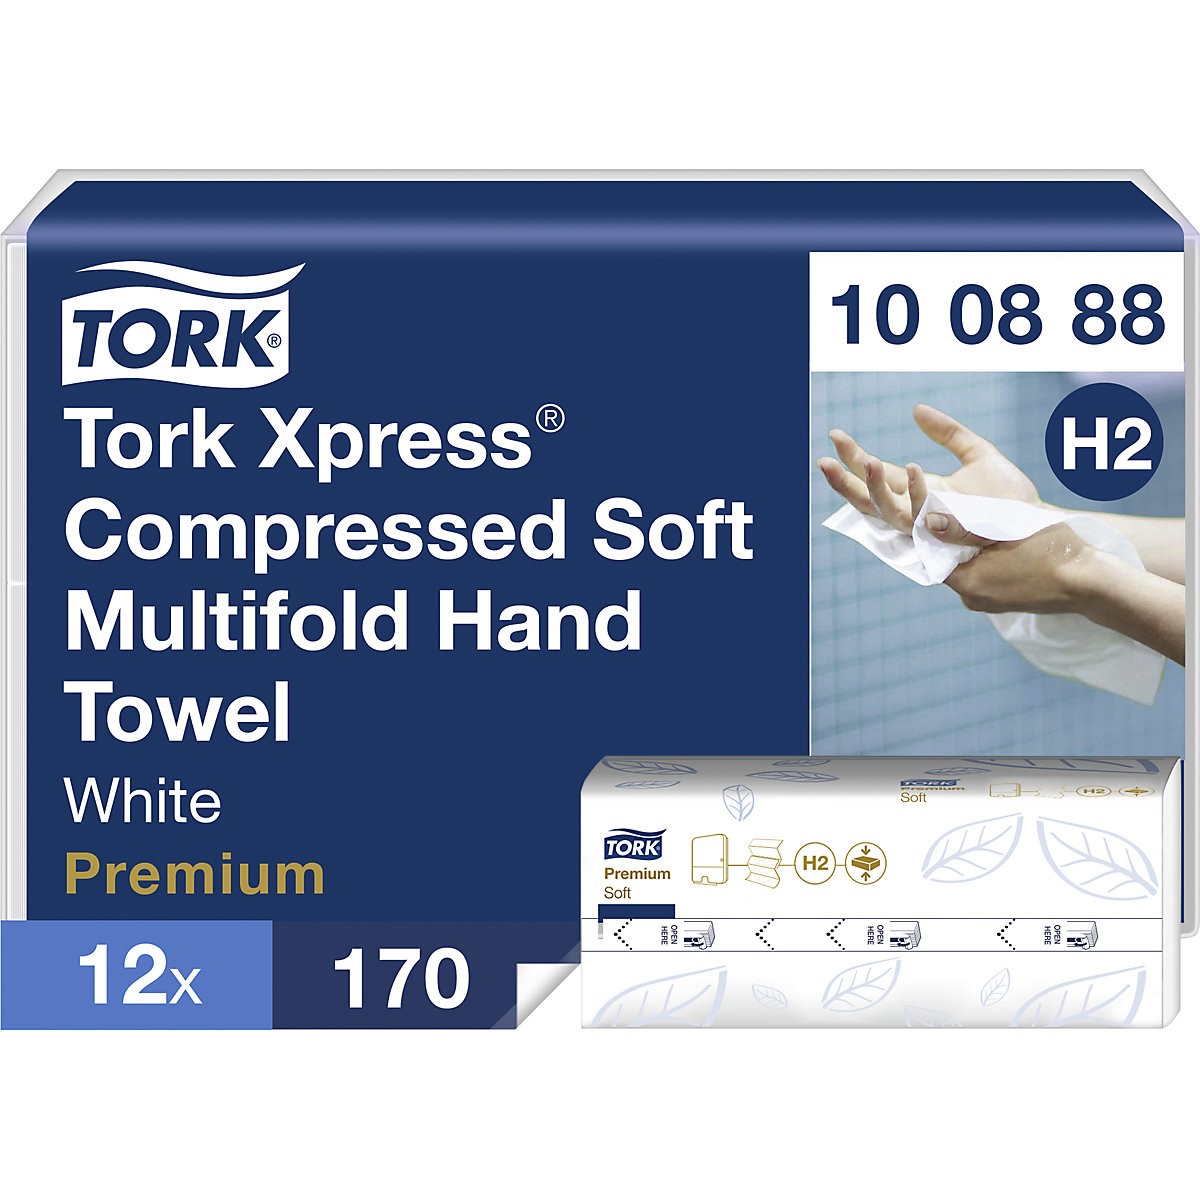 Stlačené papírové ručníky Multifold Xpress - TORK